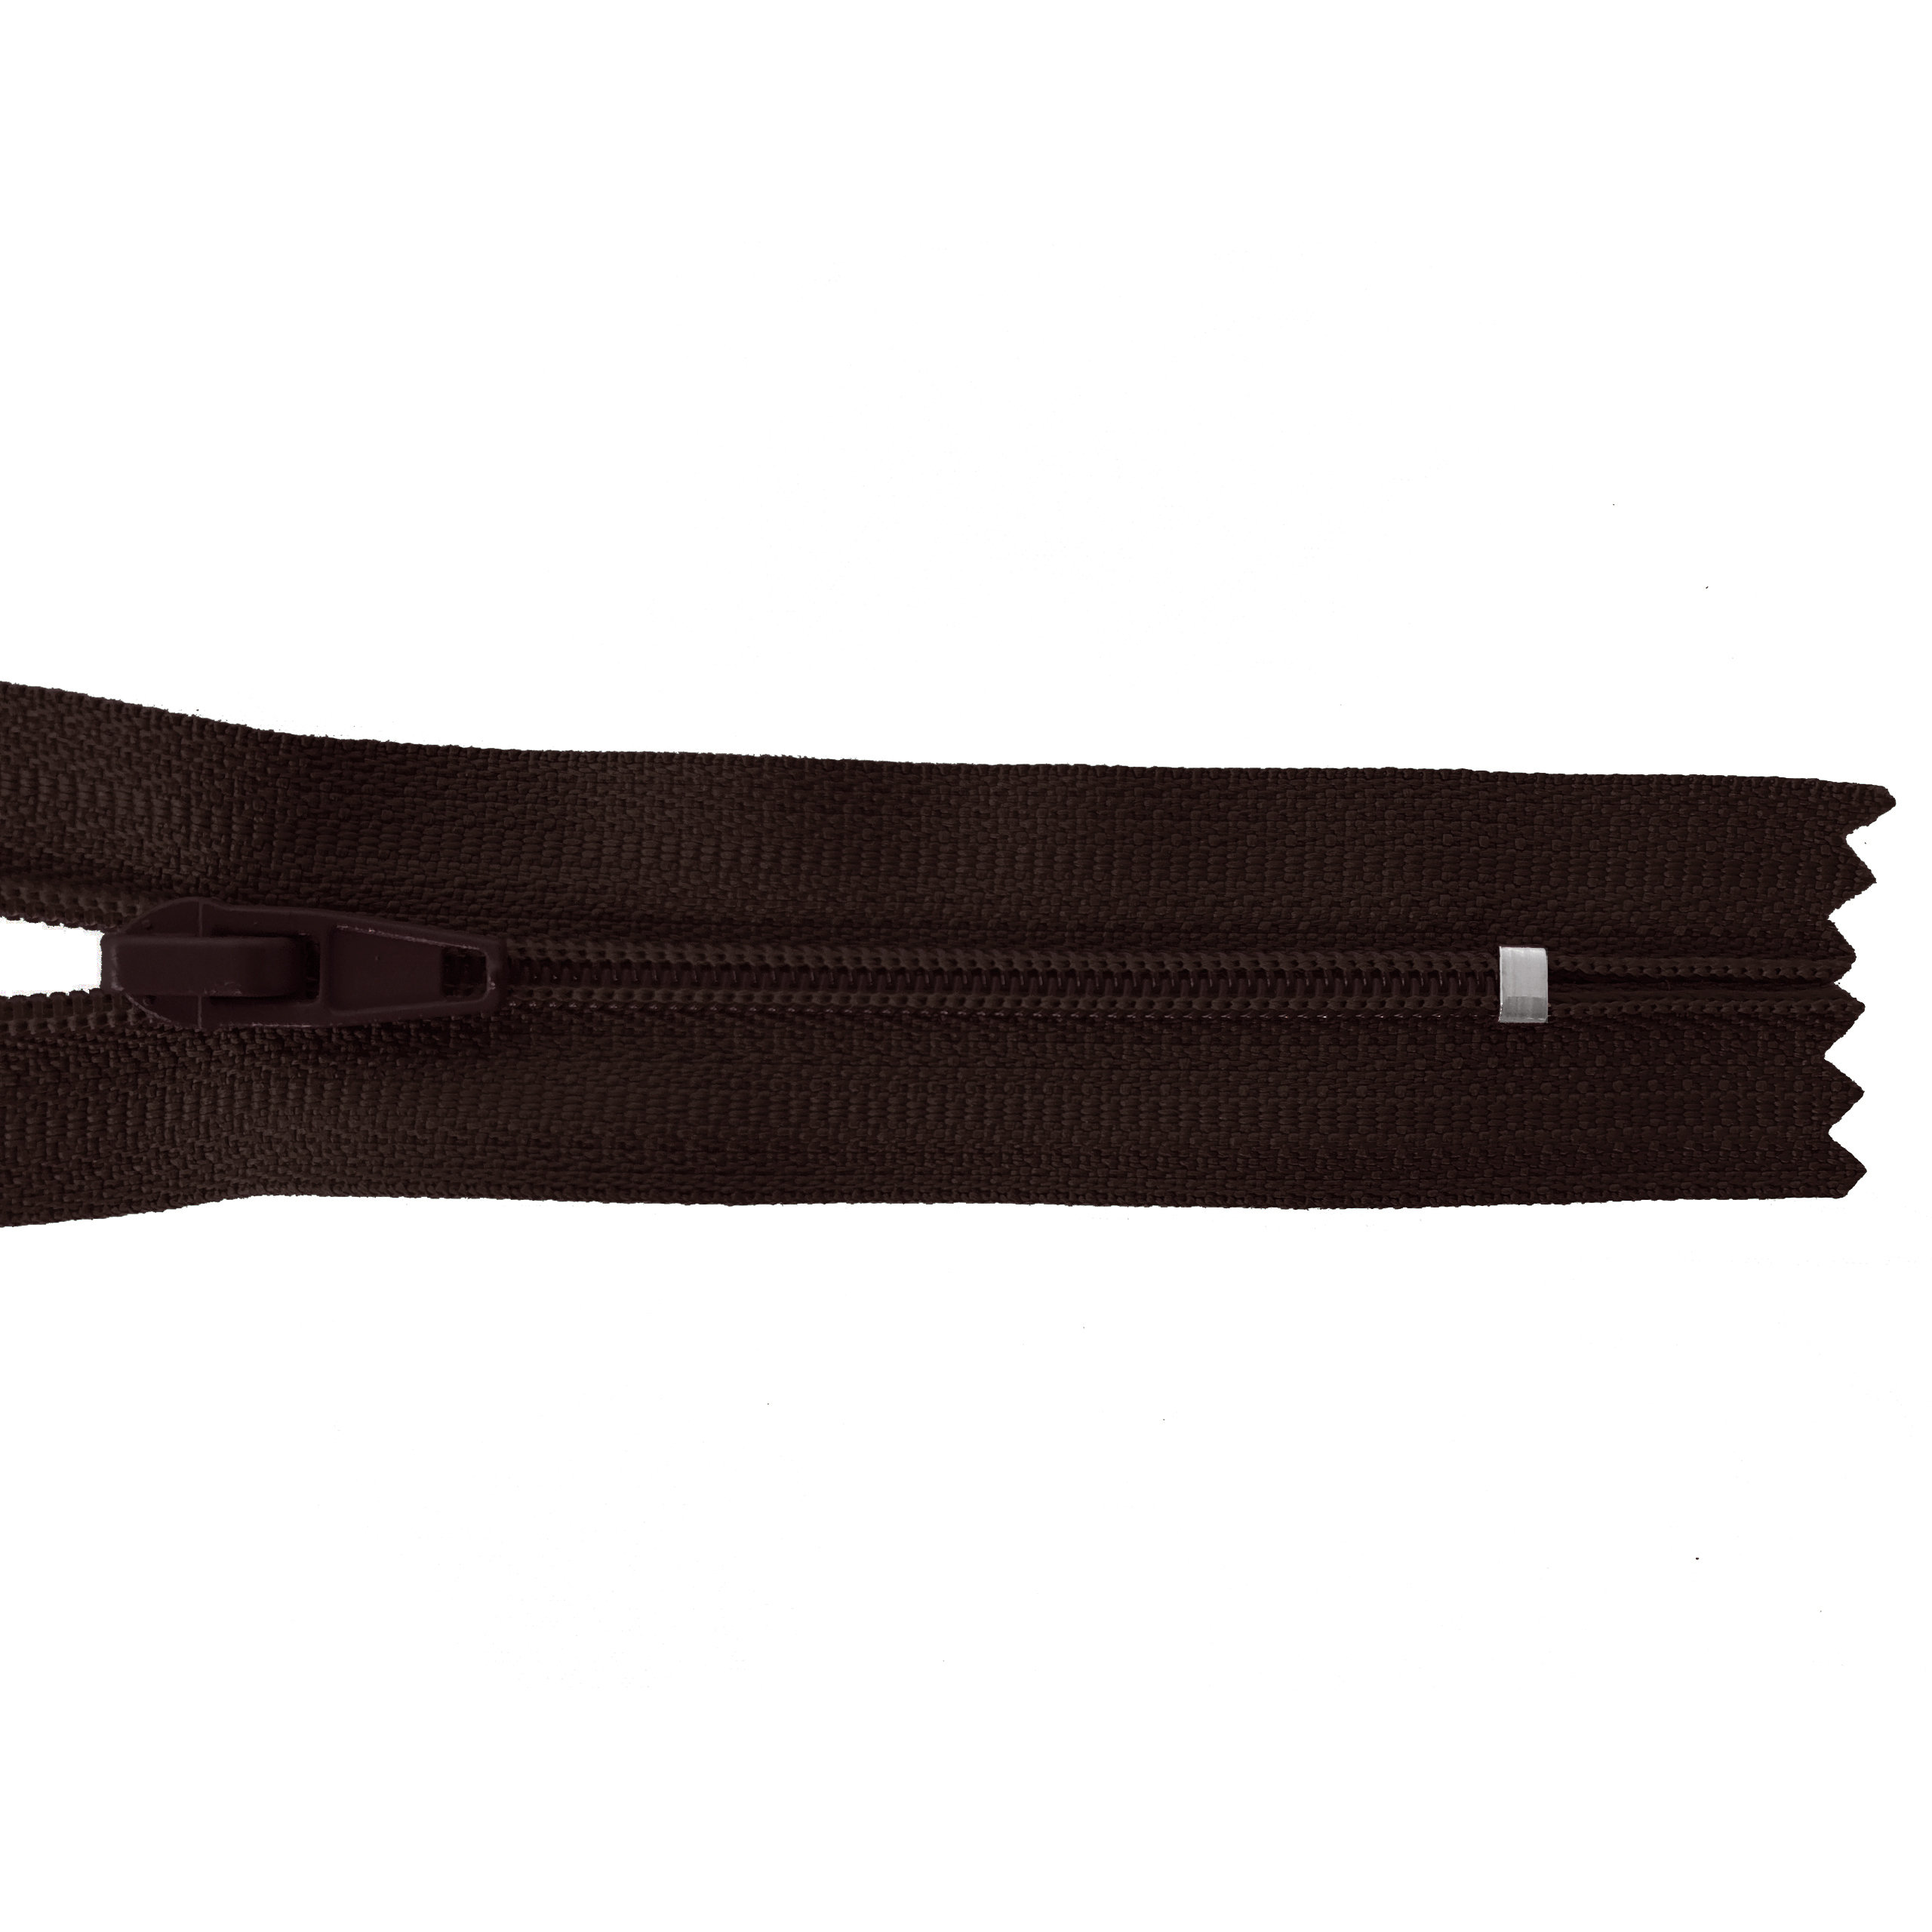 Reißverschluss 20cm, nicht teilbar, PES-Spirale fein, schwarz-braun, hochwertiger Marken-Reißverschluss von Rubi/Barcelona